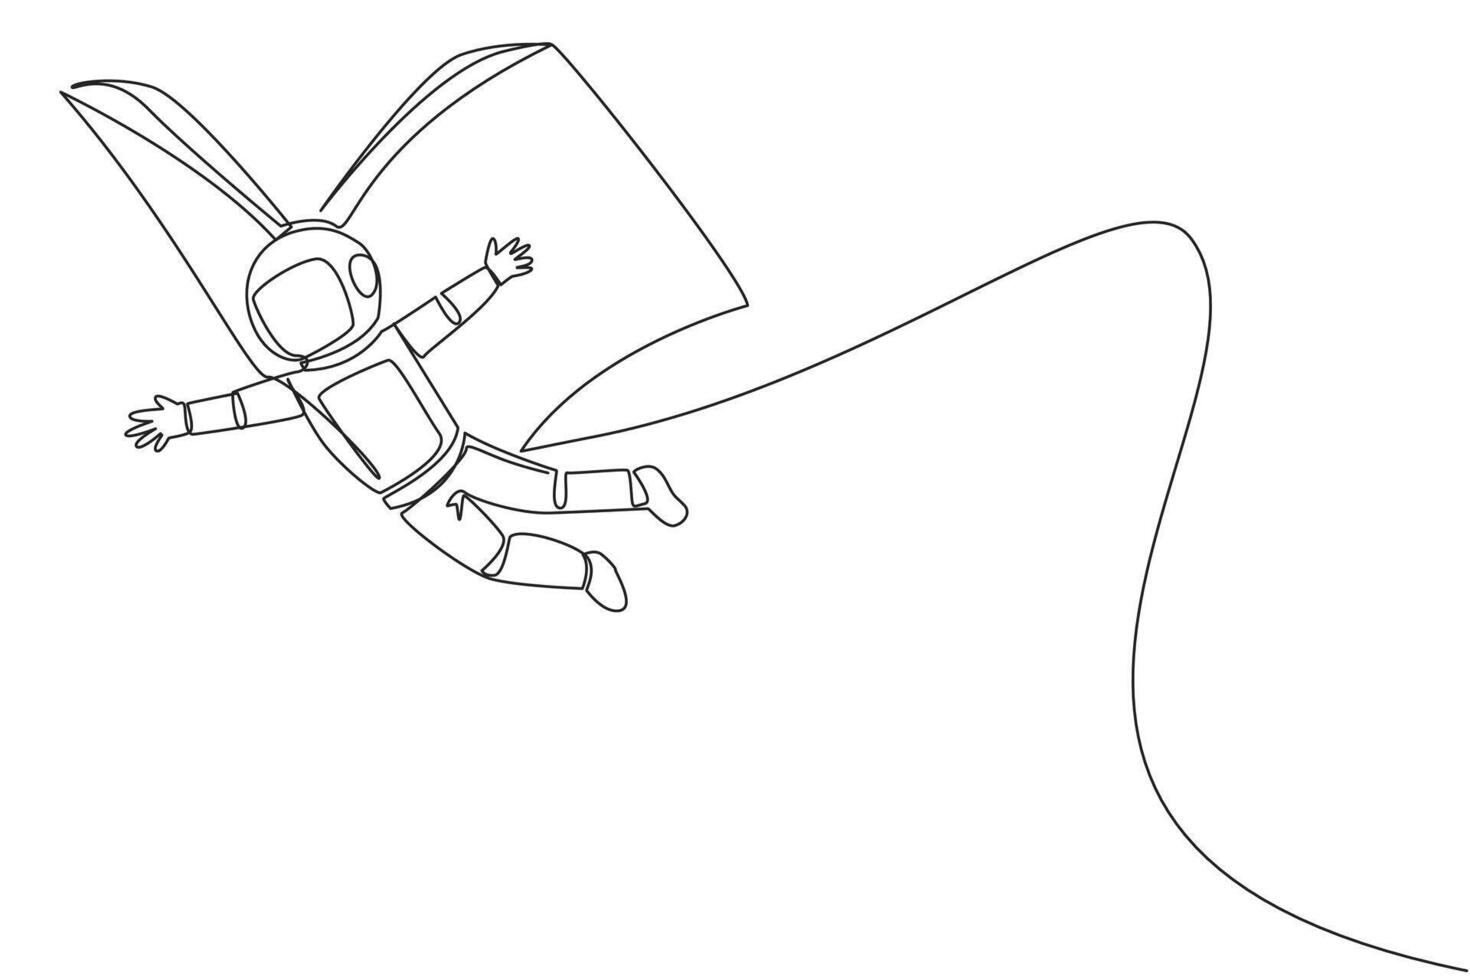 Single kontinuierlich Linie Zeichnung jung Astronaut fliegend mit Flügel Das Kommen Sie von öffnen groß Buch. das Metapher getragen Weg mit das Handlung. konstruktiv Fantasie. einer Linie Design Illustration vektor